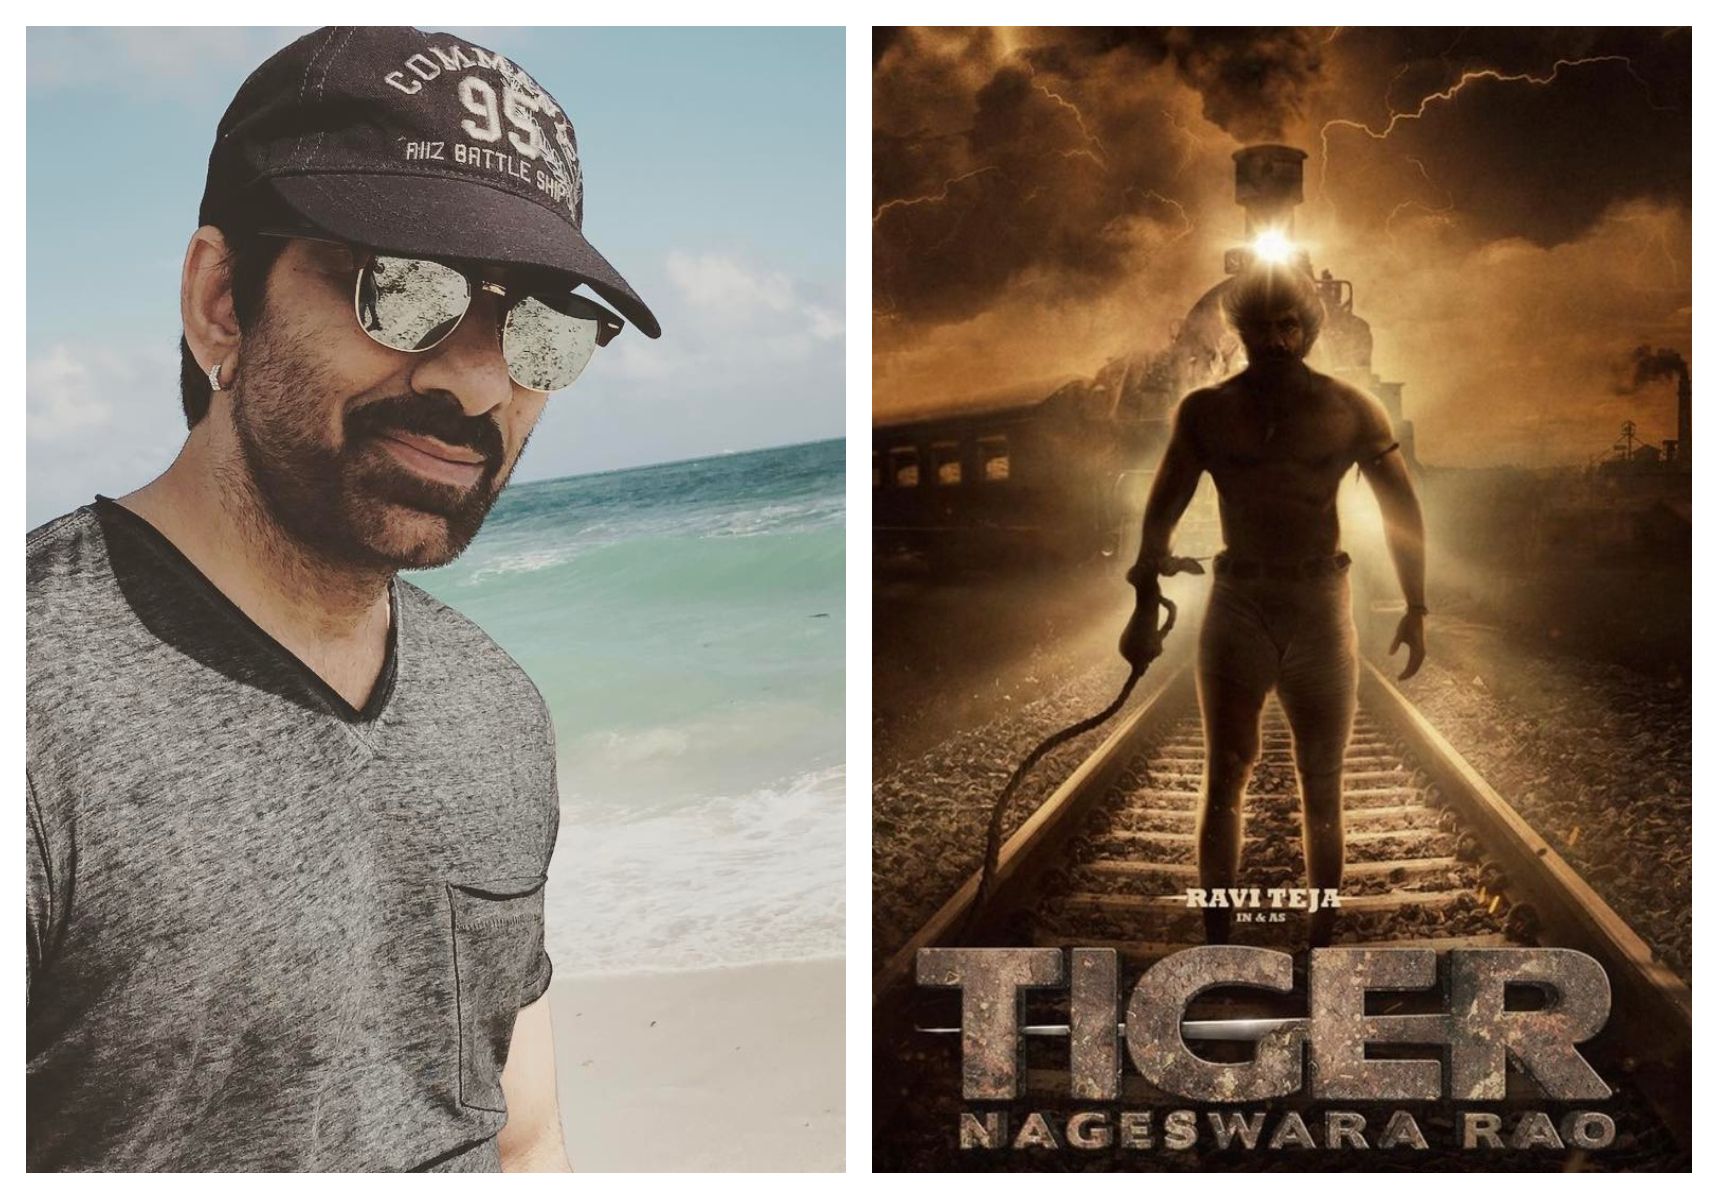 दहाड़ने  के लिए तैयार है टाइगर ! शुरू हो गई रवि तेजा की पैन इंडिया फिल्म ‘टाइगर नागेश्वर राव’ की शूटिंग